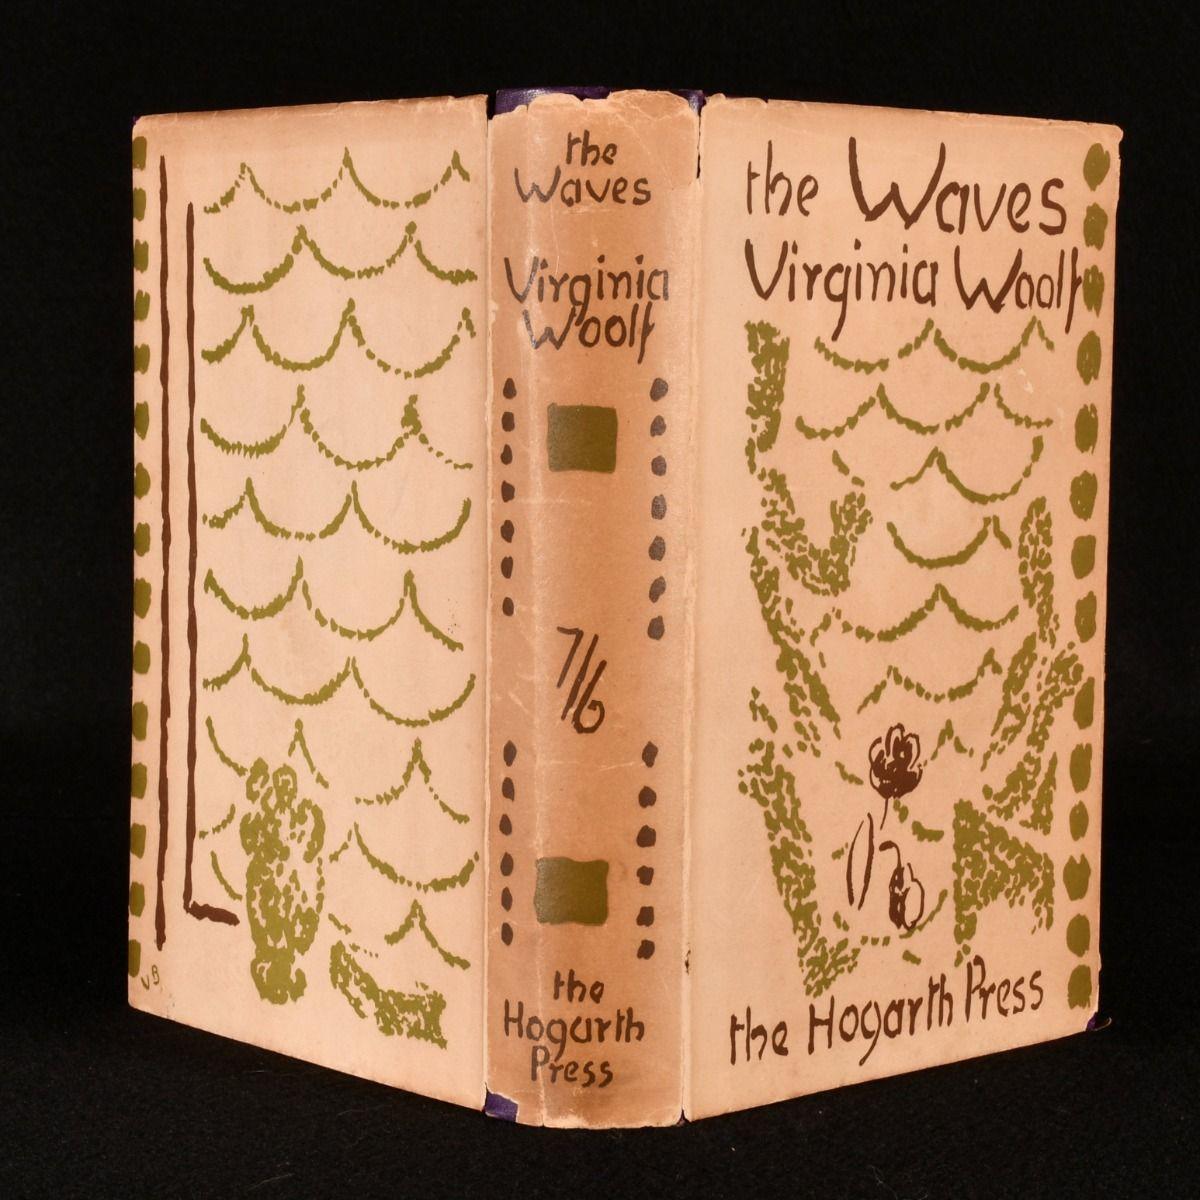 Eine schöne erste Ausgabe dieses experimentellen Romans von Virginia Woolf, einer ihrer rätselhaftesten Veröffentlichungen, hier in der ursprünglichen schön gestalteten Schutzumschlag von Vanessa Bell.

Die erste Ausgabe, erster Abdruck dieses